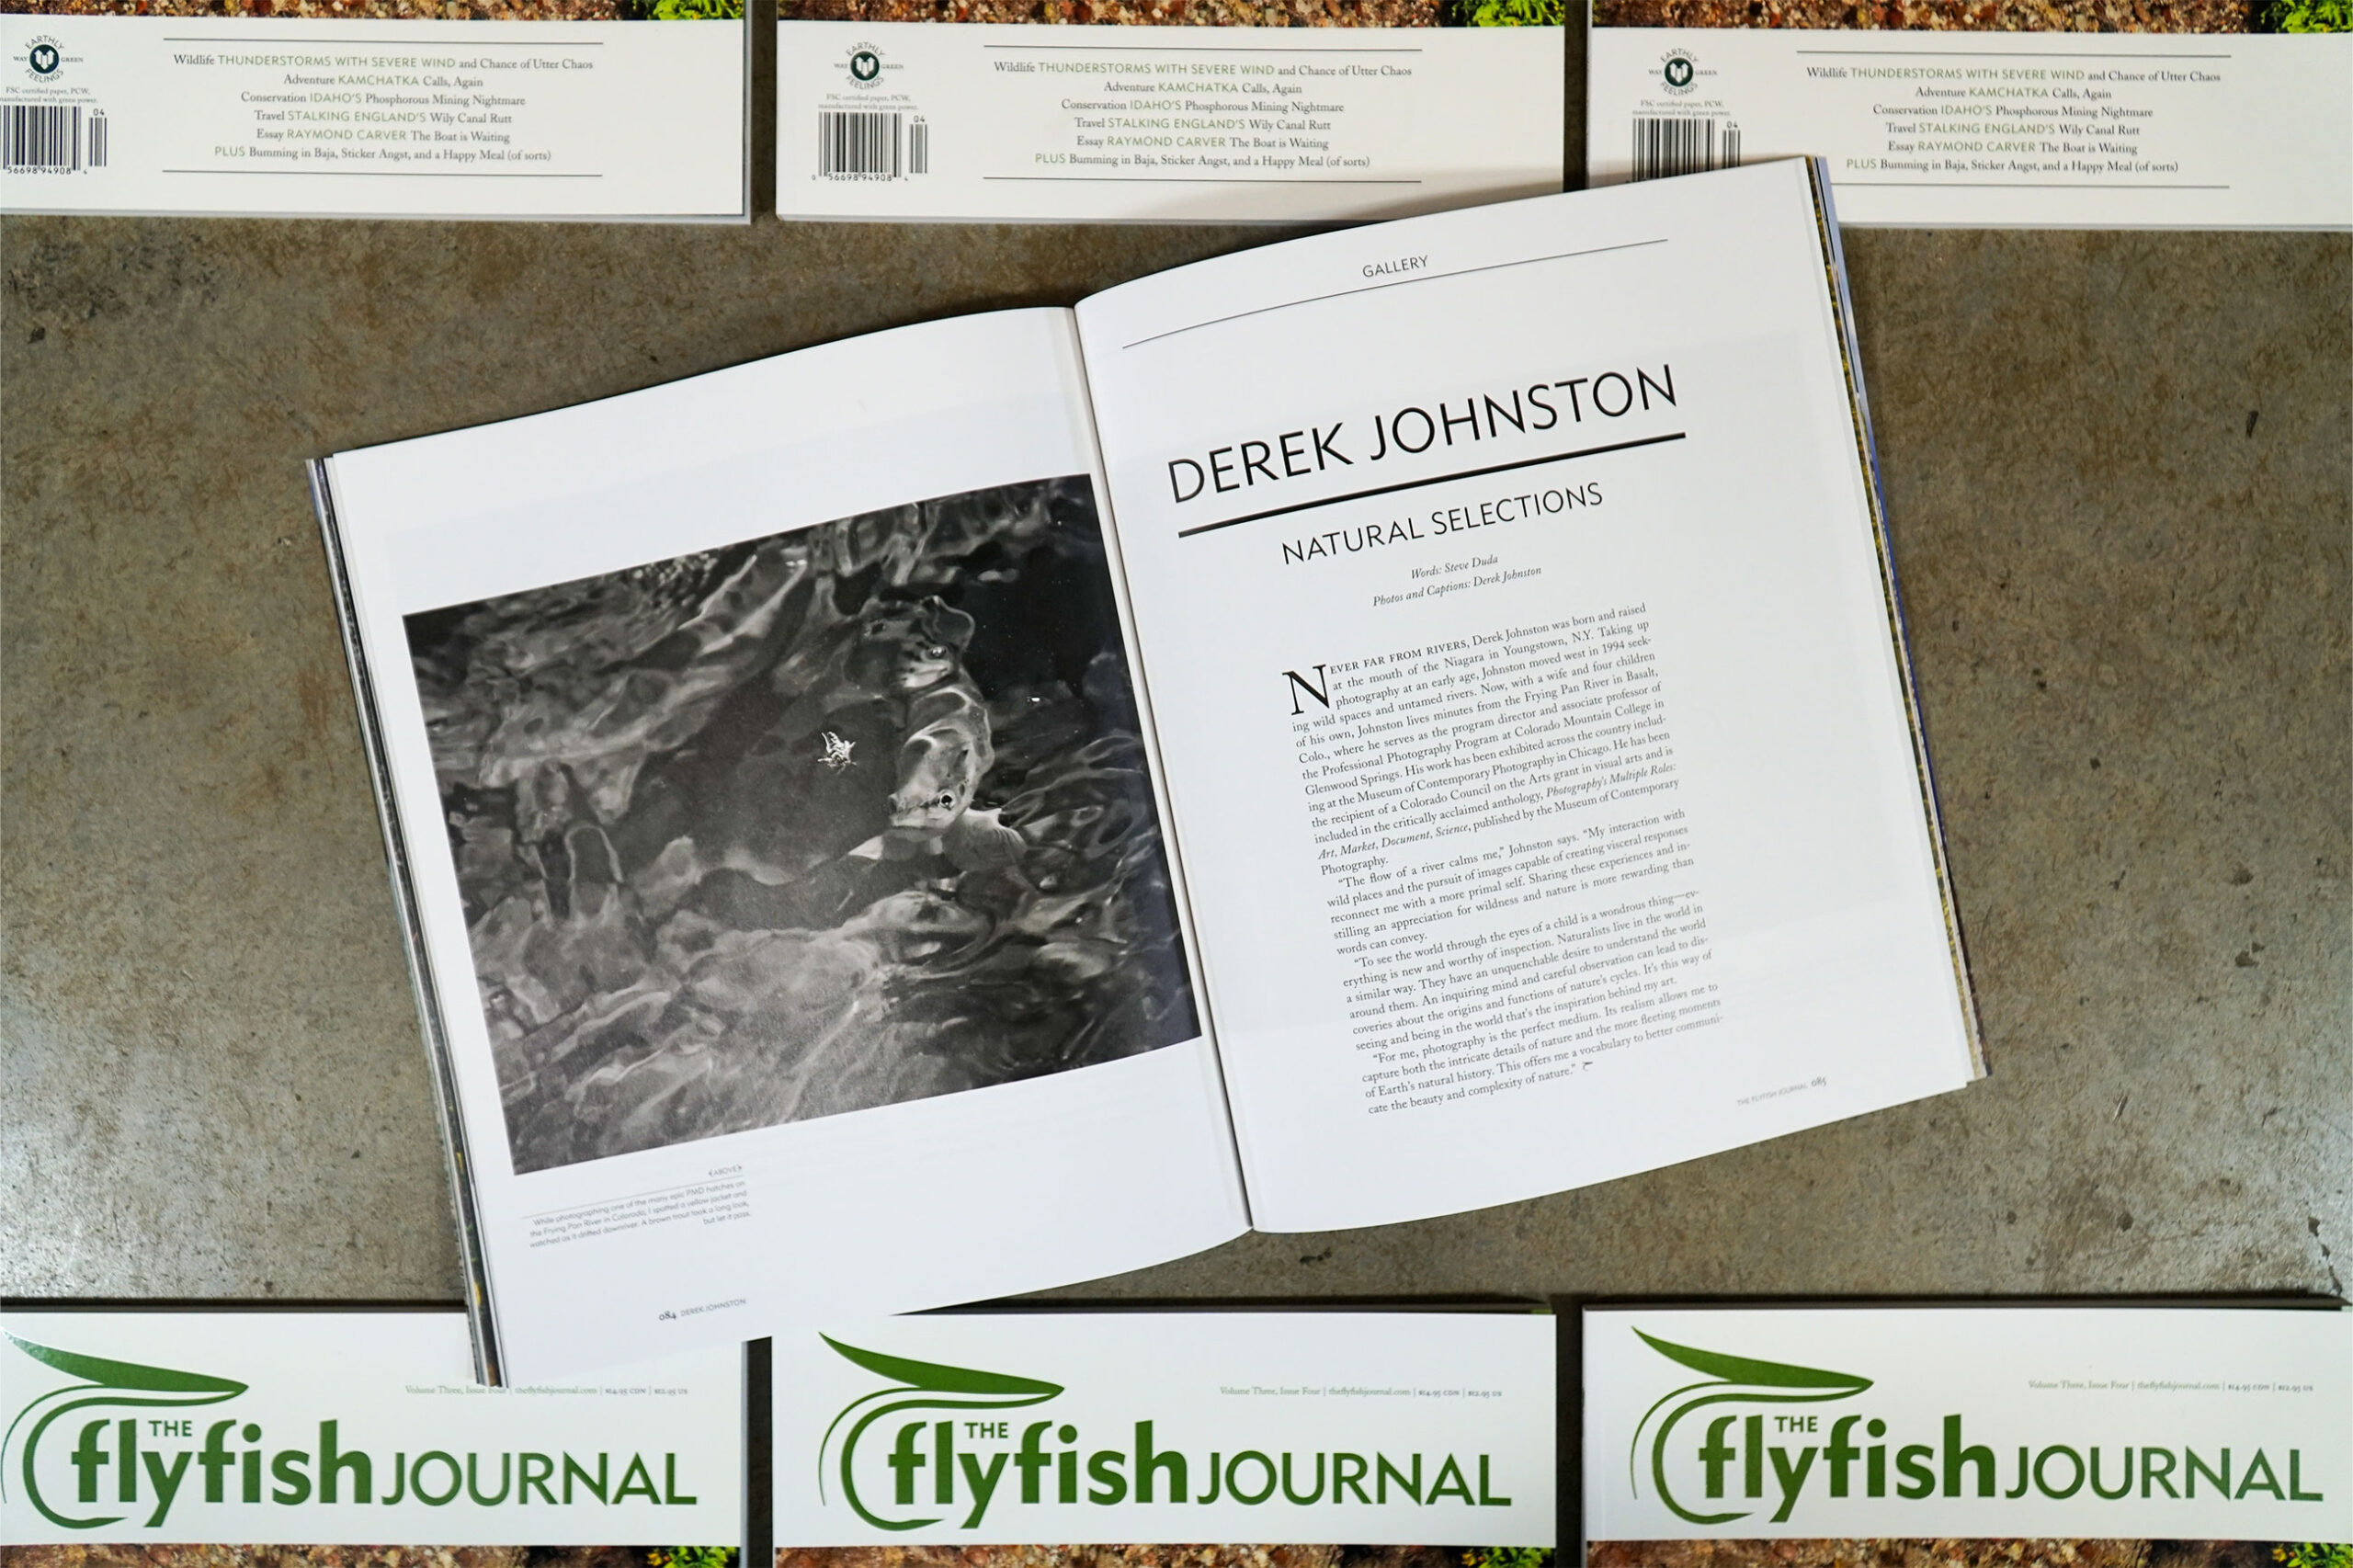 The Flyfish Journal Volume 3 Issue 4 Feature Derek Johnston